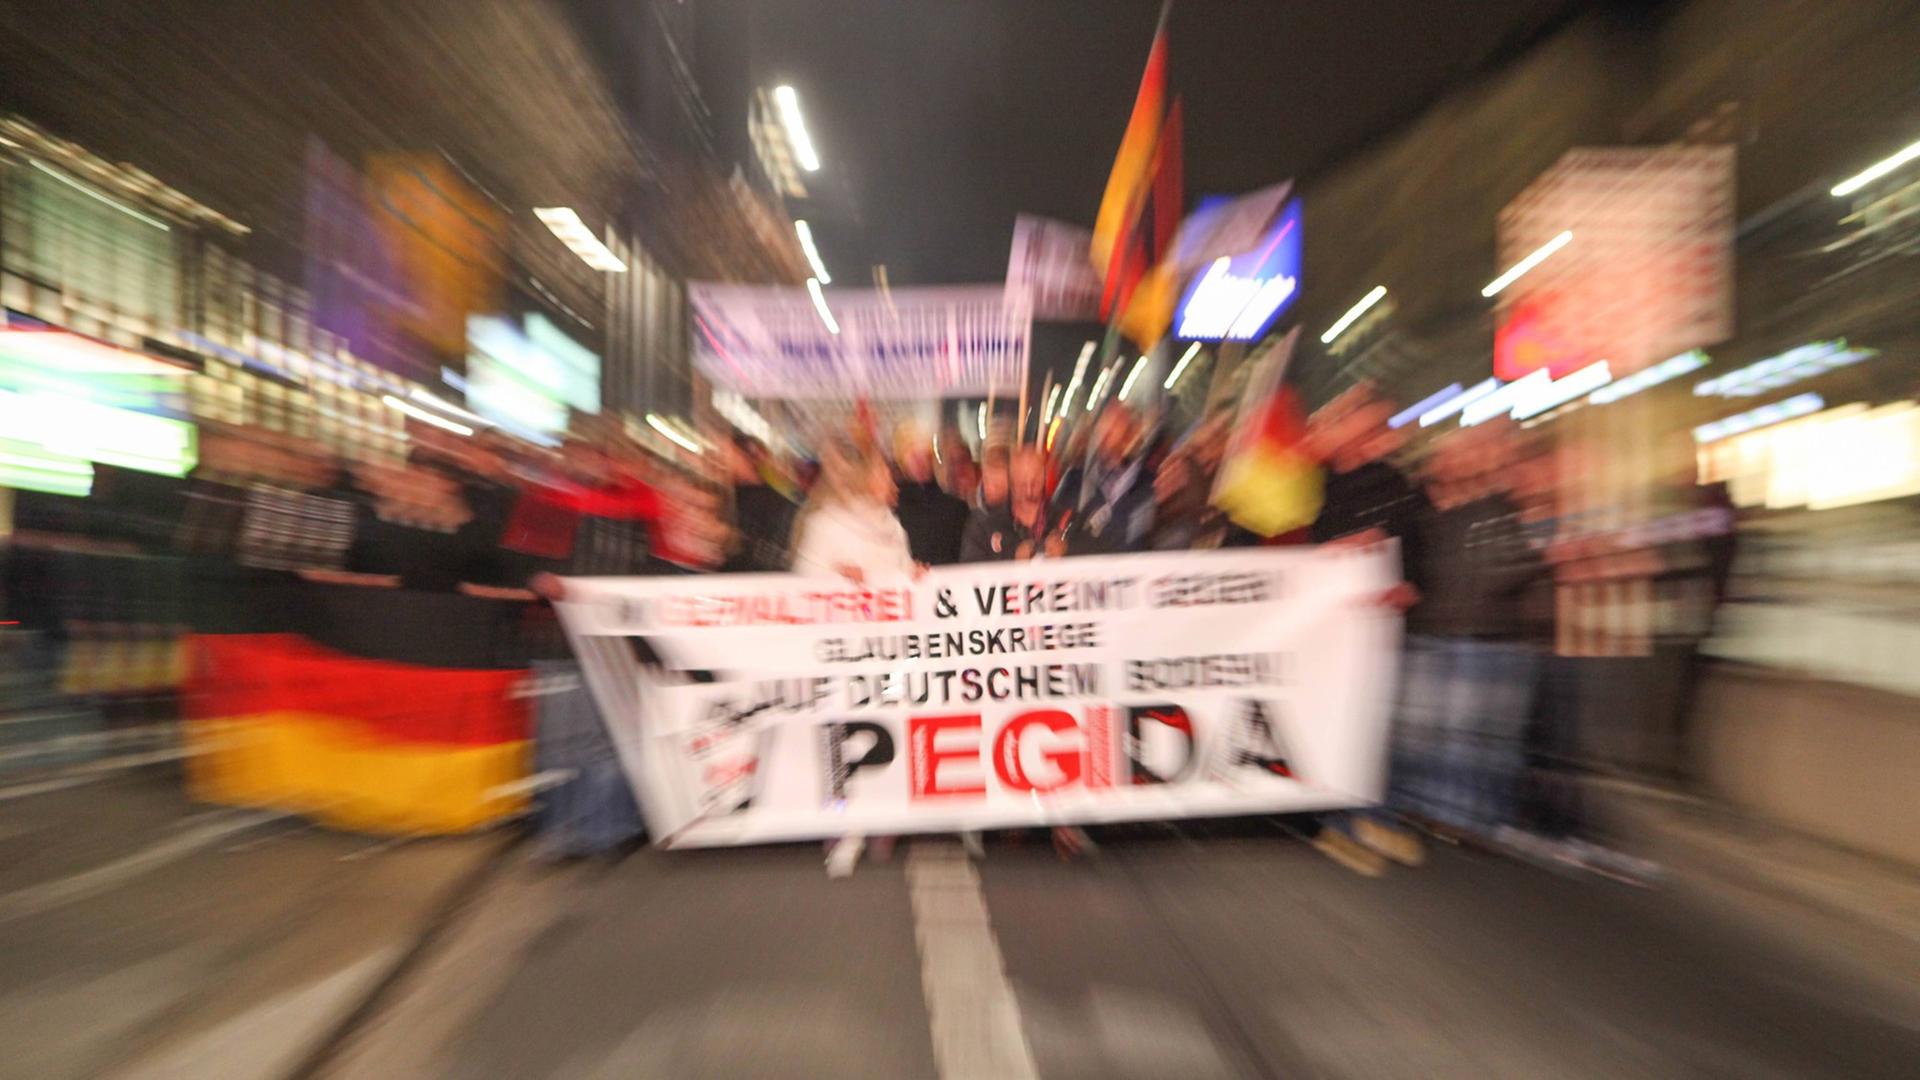 Die Pegida Demonstration in Dresden, Deutschland.